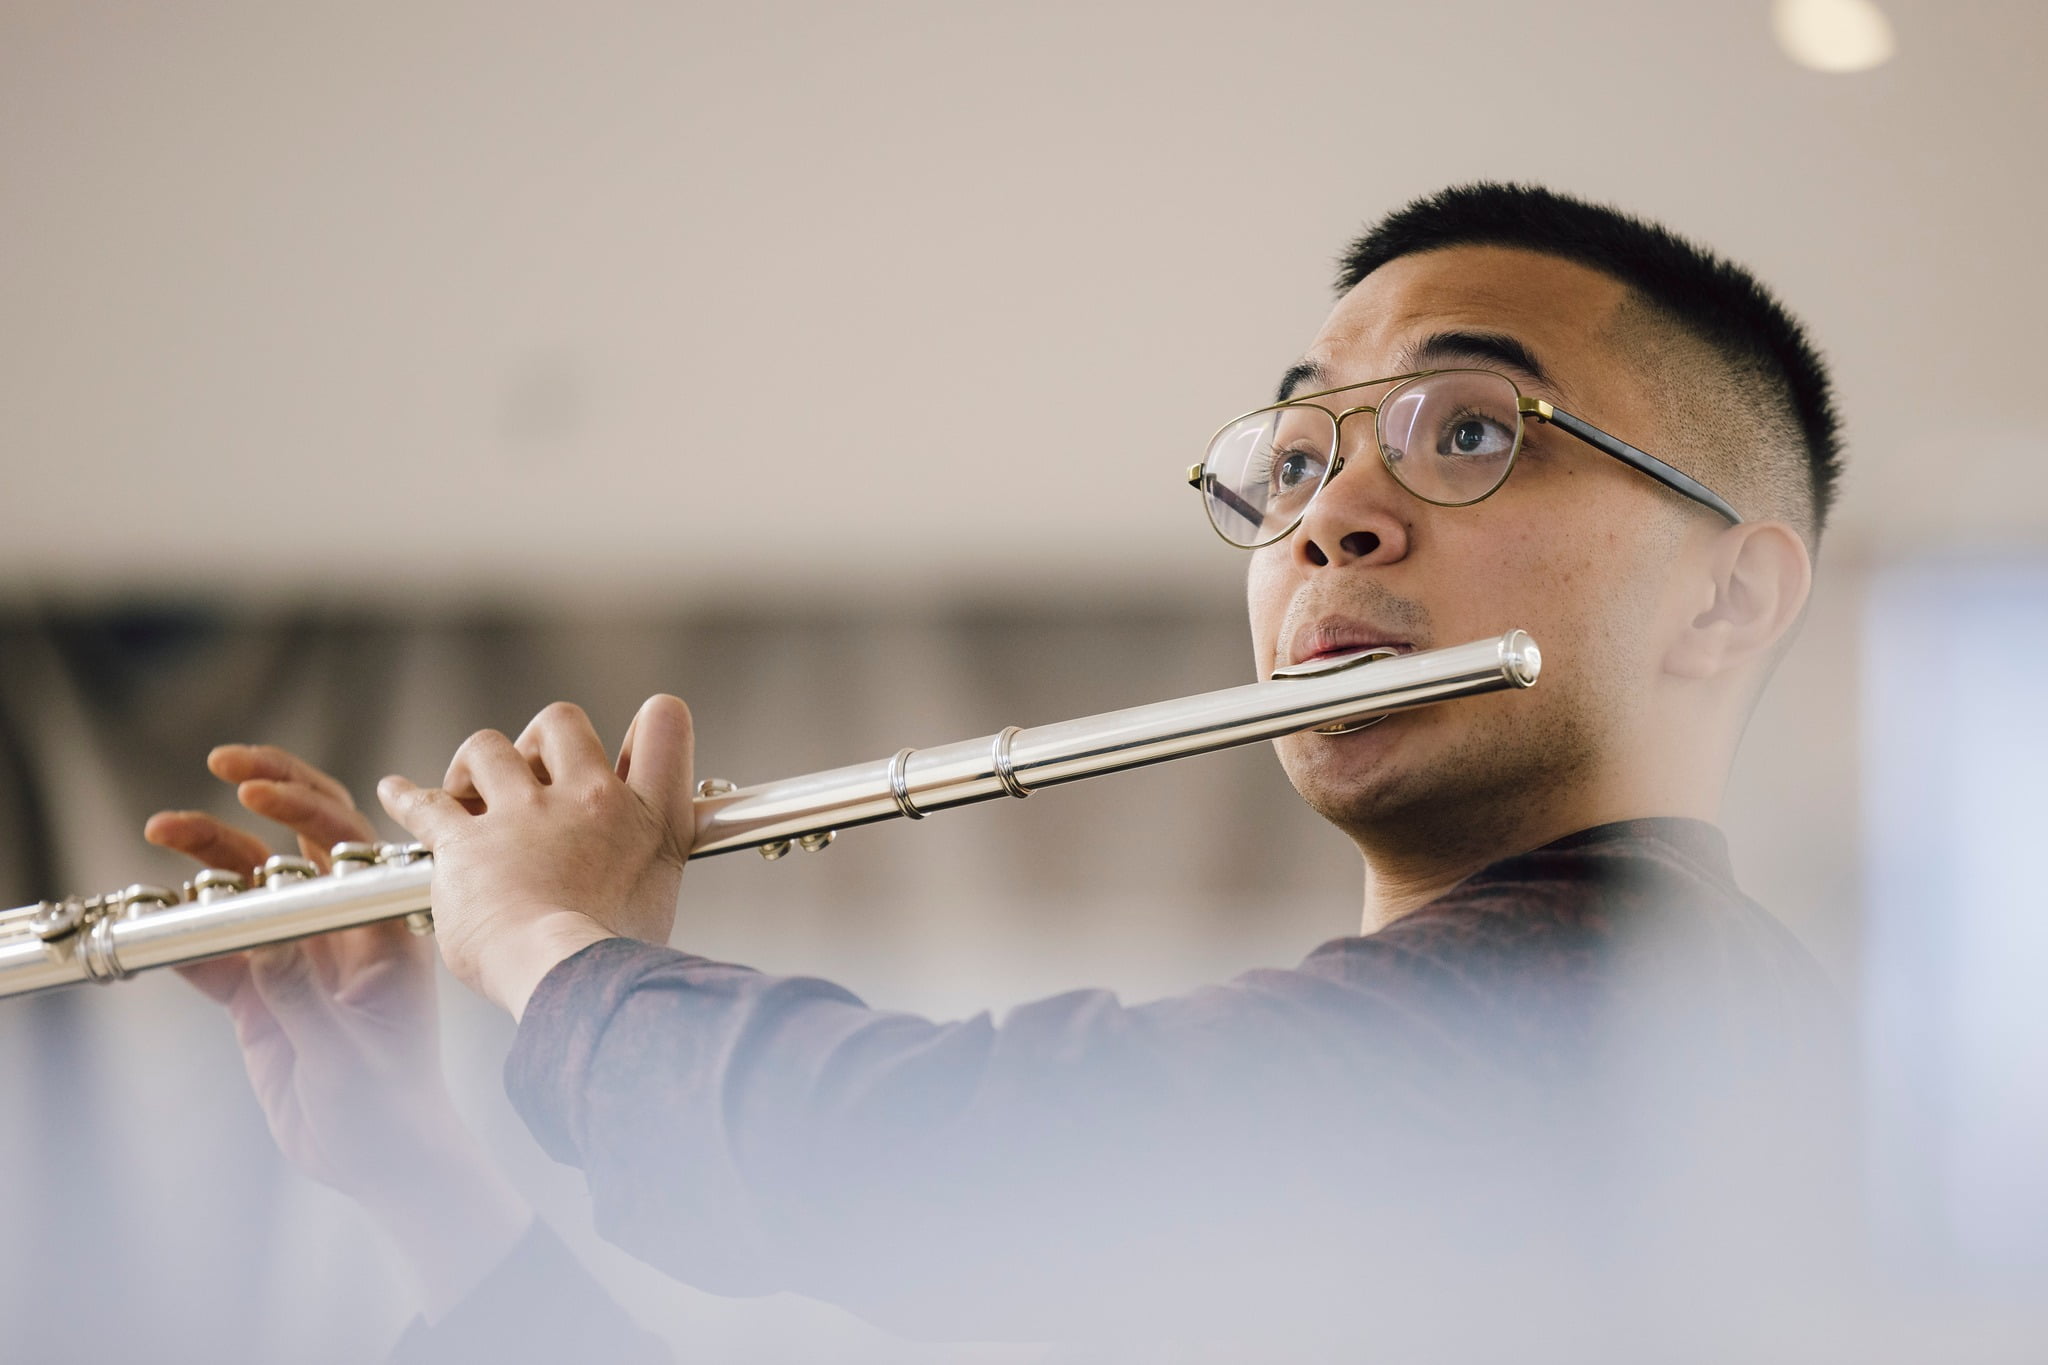 LMN-Flötist Rafael Adobas Bayog gewann 1. Preis und Sonderpreis für zeitgenössische Musik beim 10th Kube  International Flute Competition in Japan